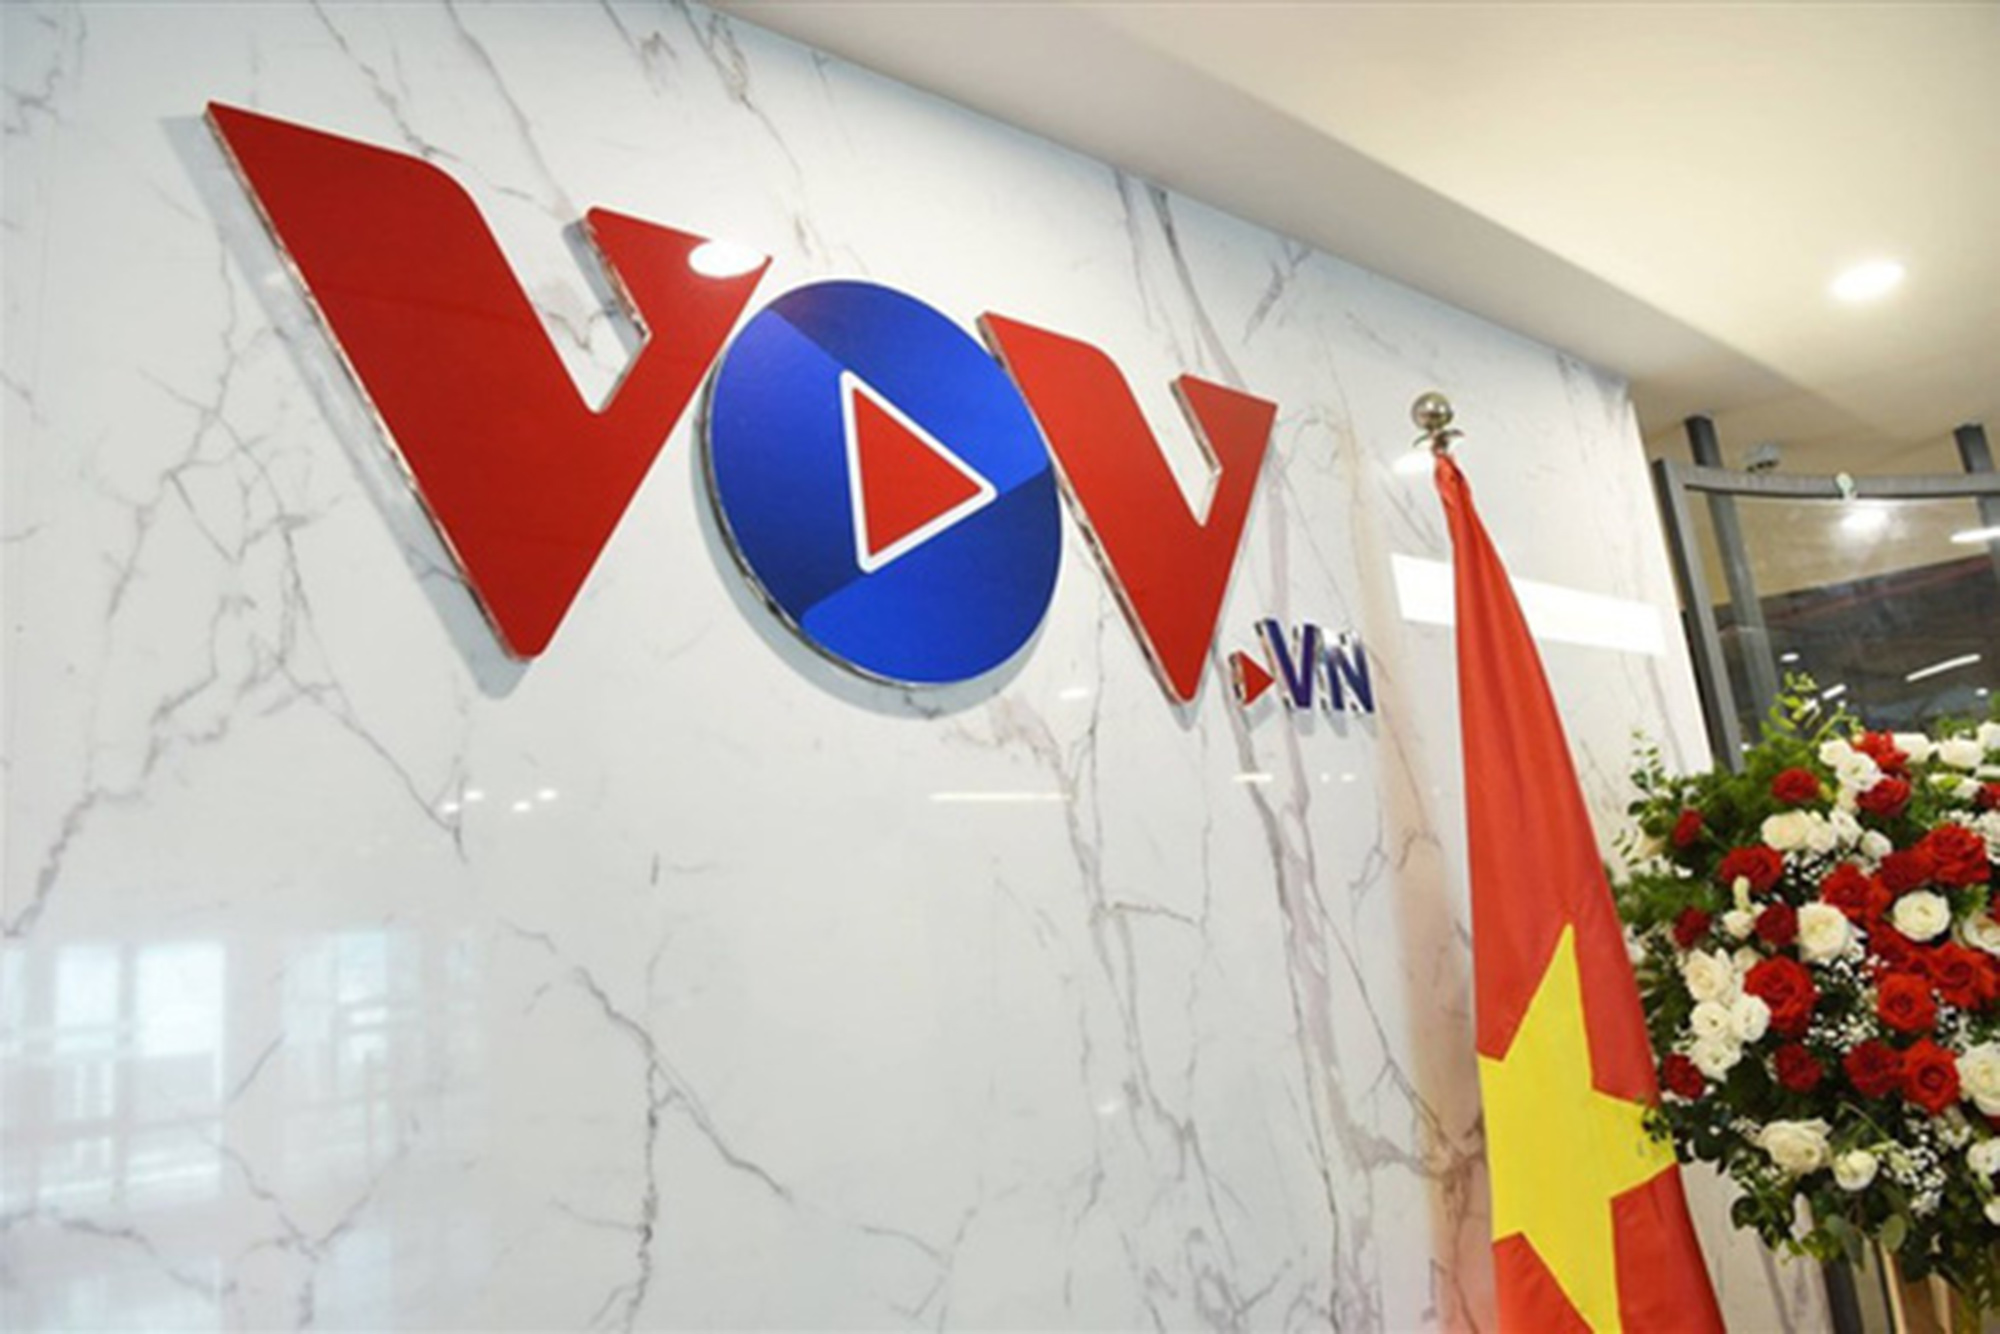 Tấn công báo điện tử VOV sau khi đăng 2 bài về bà Phương Hằng, một thanh niên bị bắt - Ảnh 1.